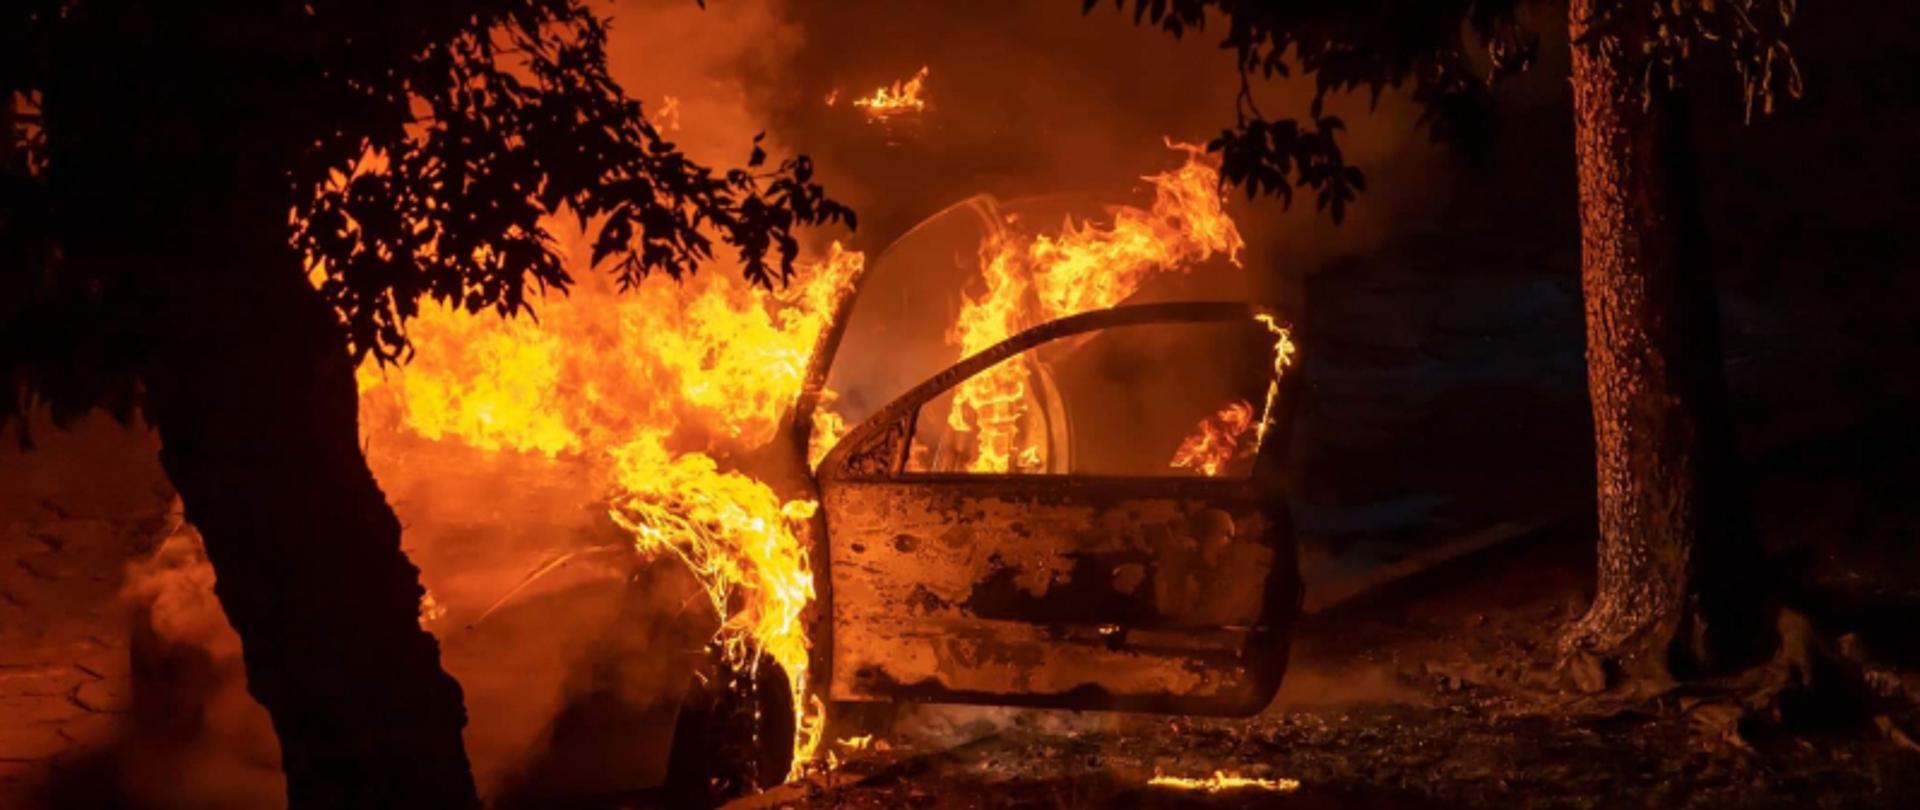 Na zdjęciu widoczny pojazd samochodowy, który jest całly w ogniu. Ogień wydobywa się spod pokrywy silnika oraz z otwartych drzwi kierowcy.